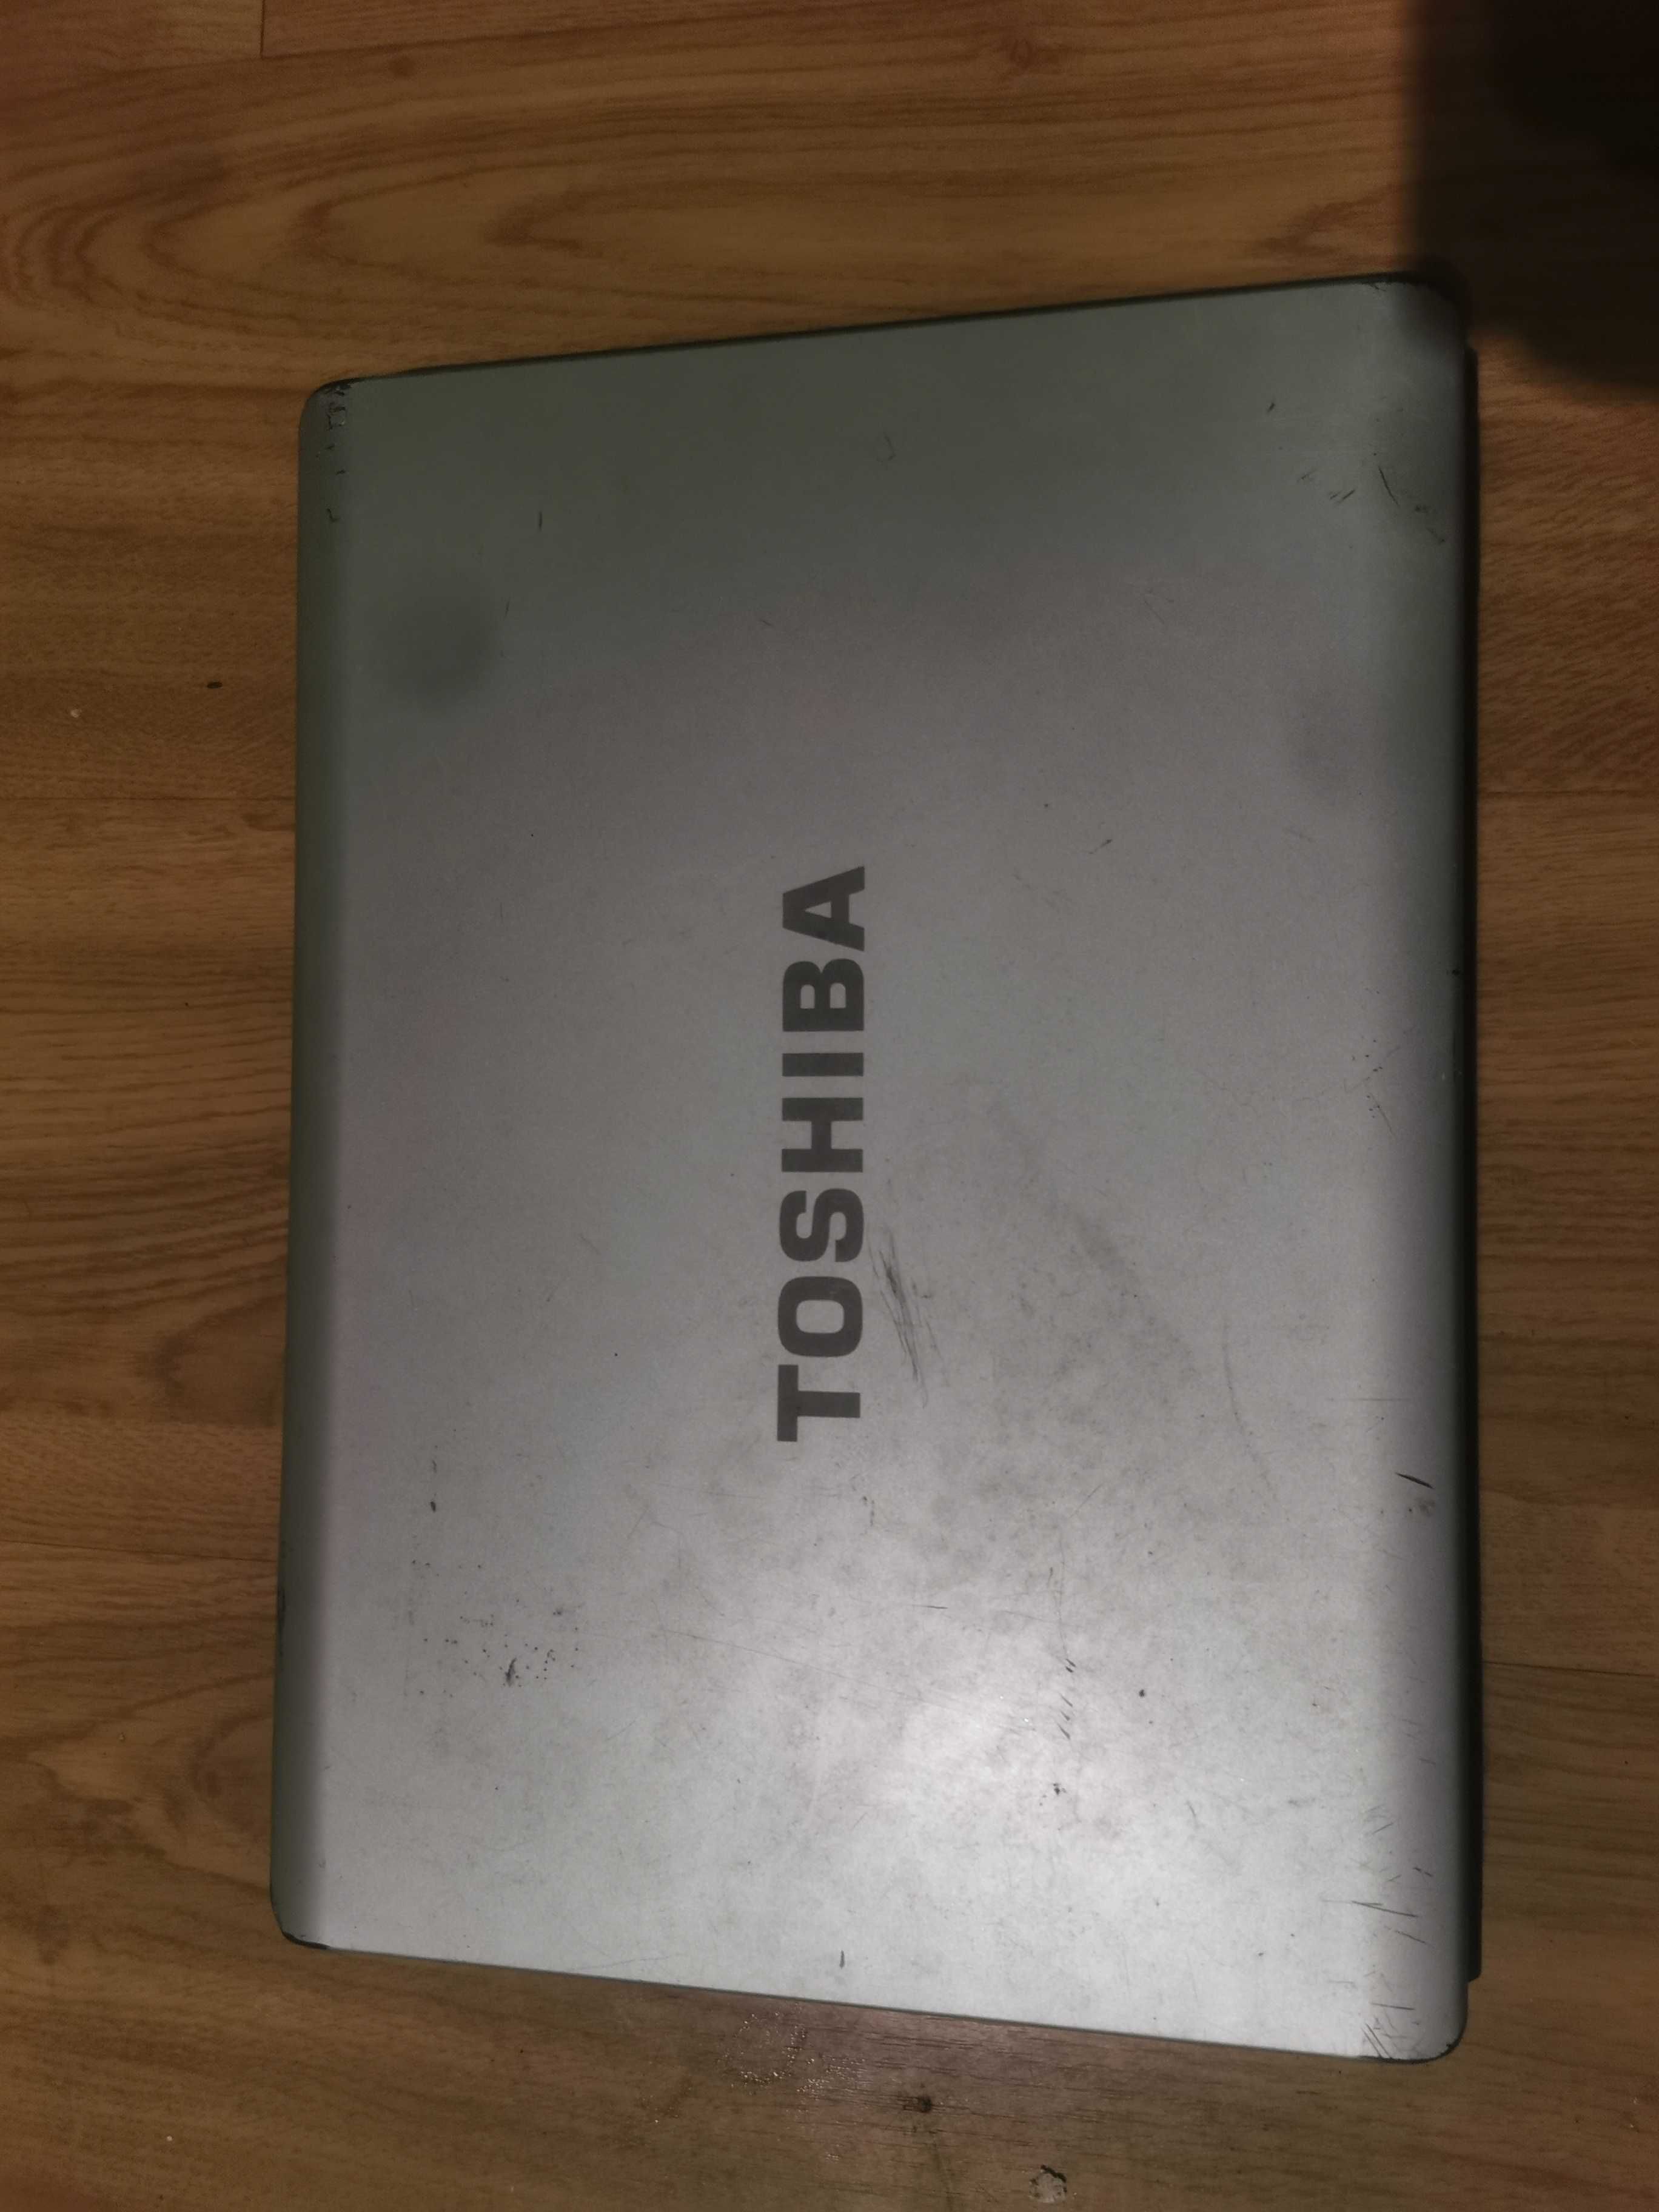 Portátil Toshiba para arranjo ou peças.